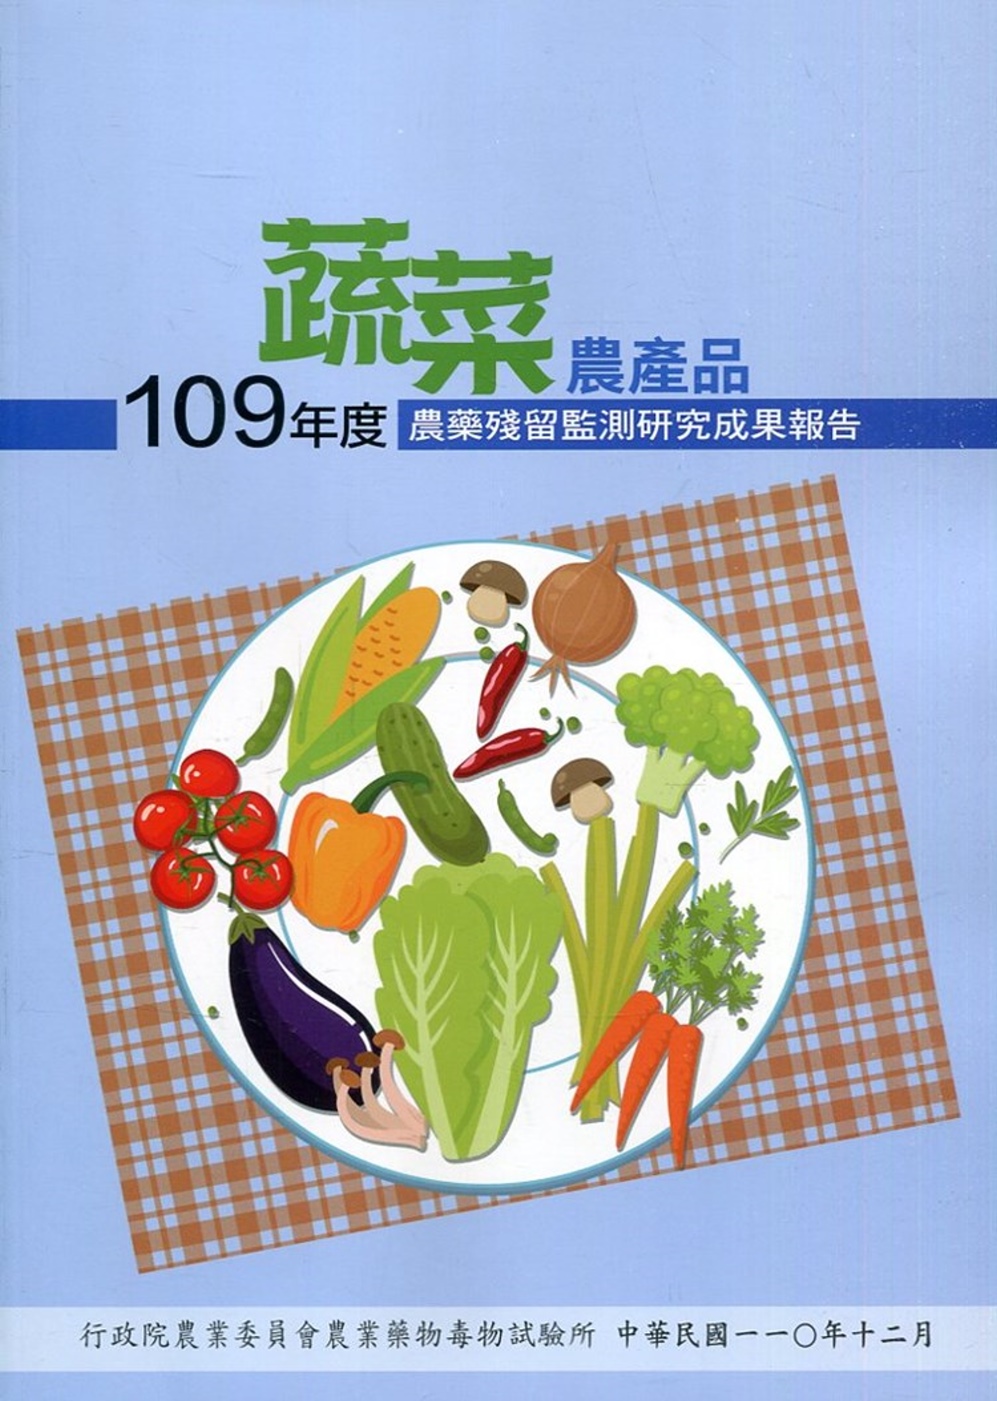 109年度蔬菜農產品農藥殘留監測研究成果報告